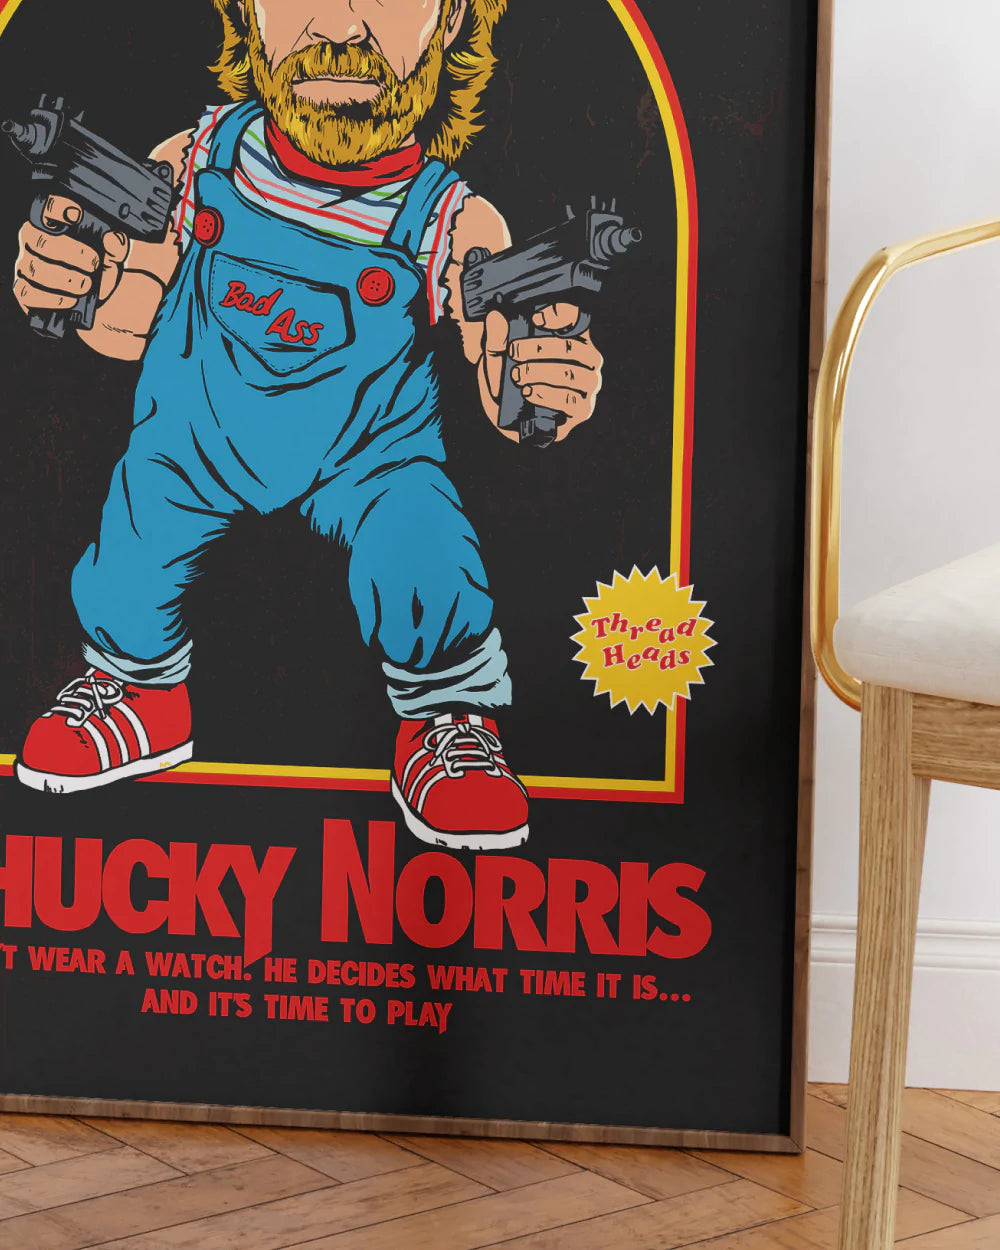 Chucky Norris Art Print | Wall Art